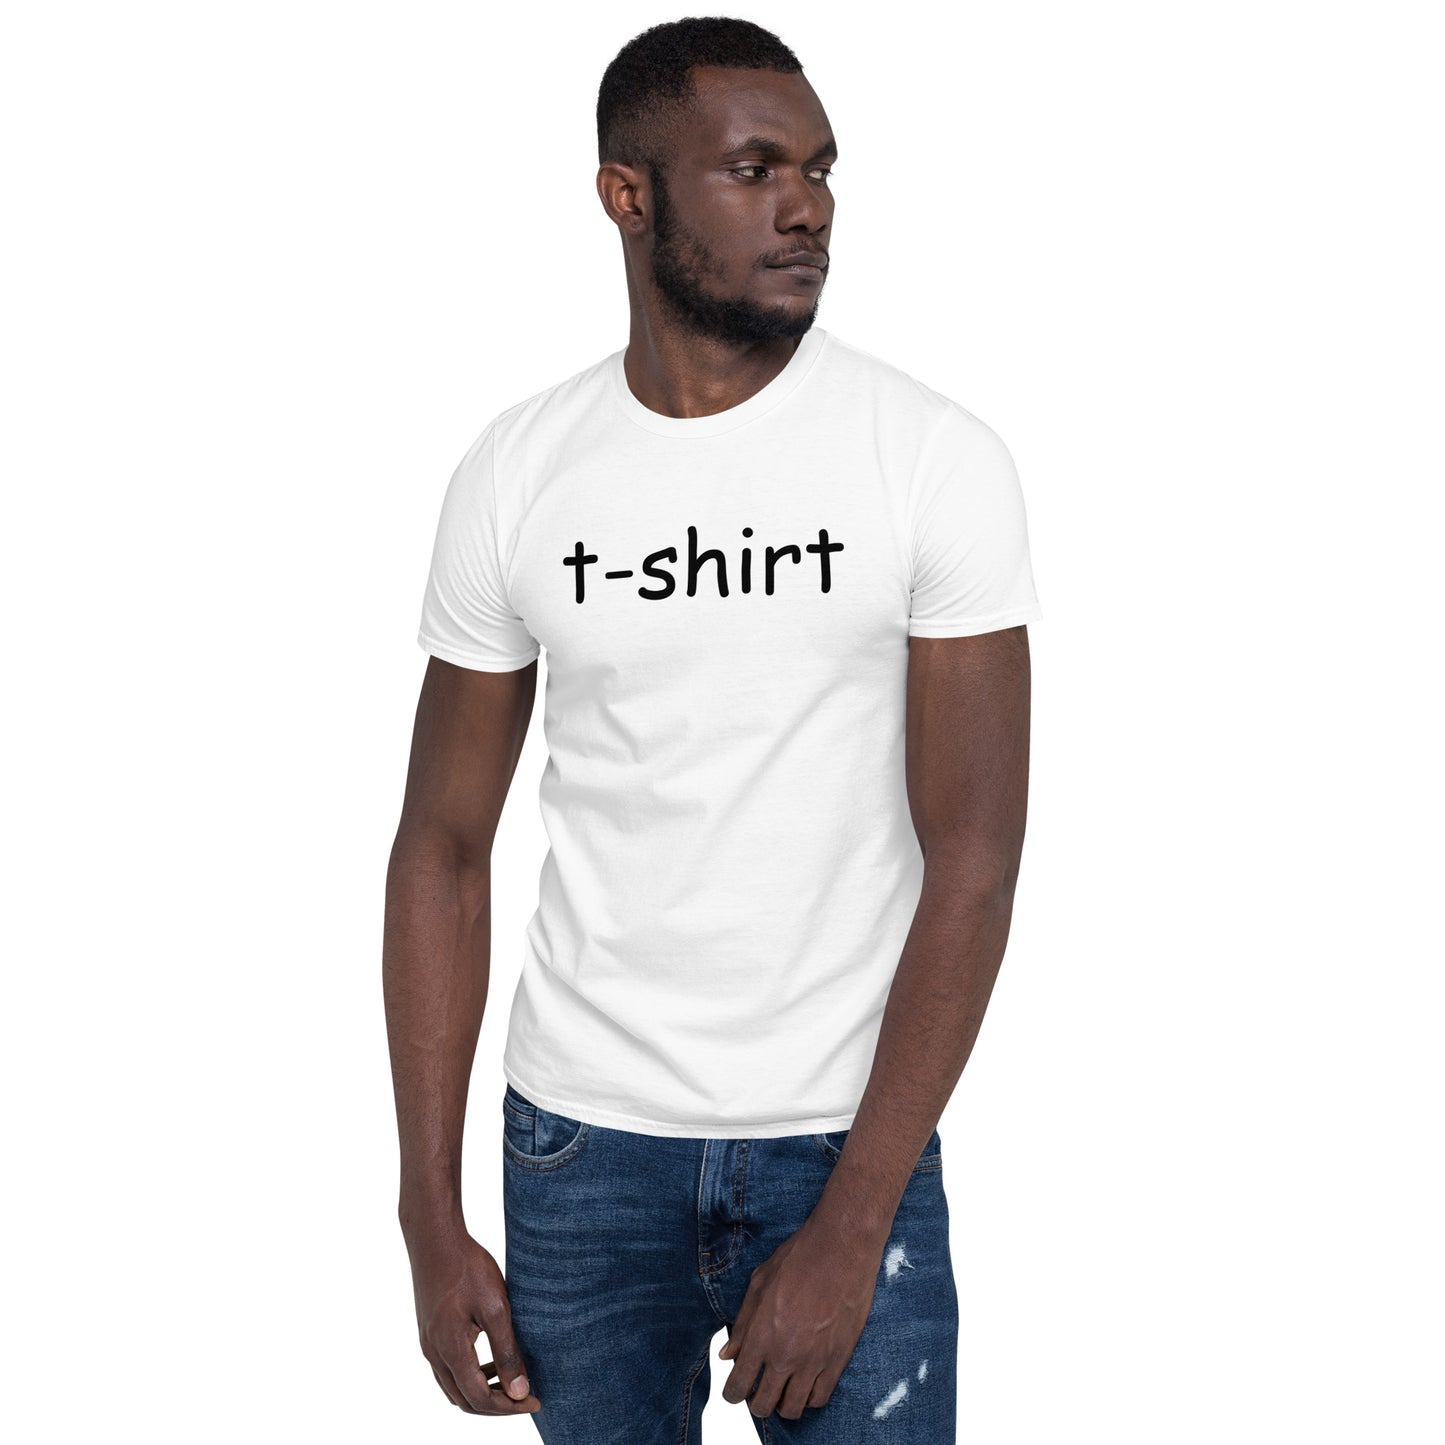 t-shirt Shirt